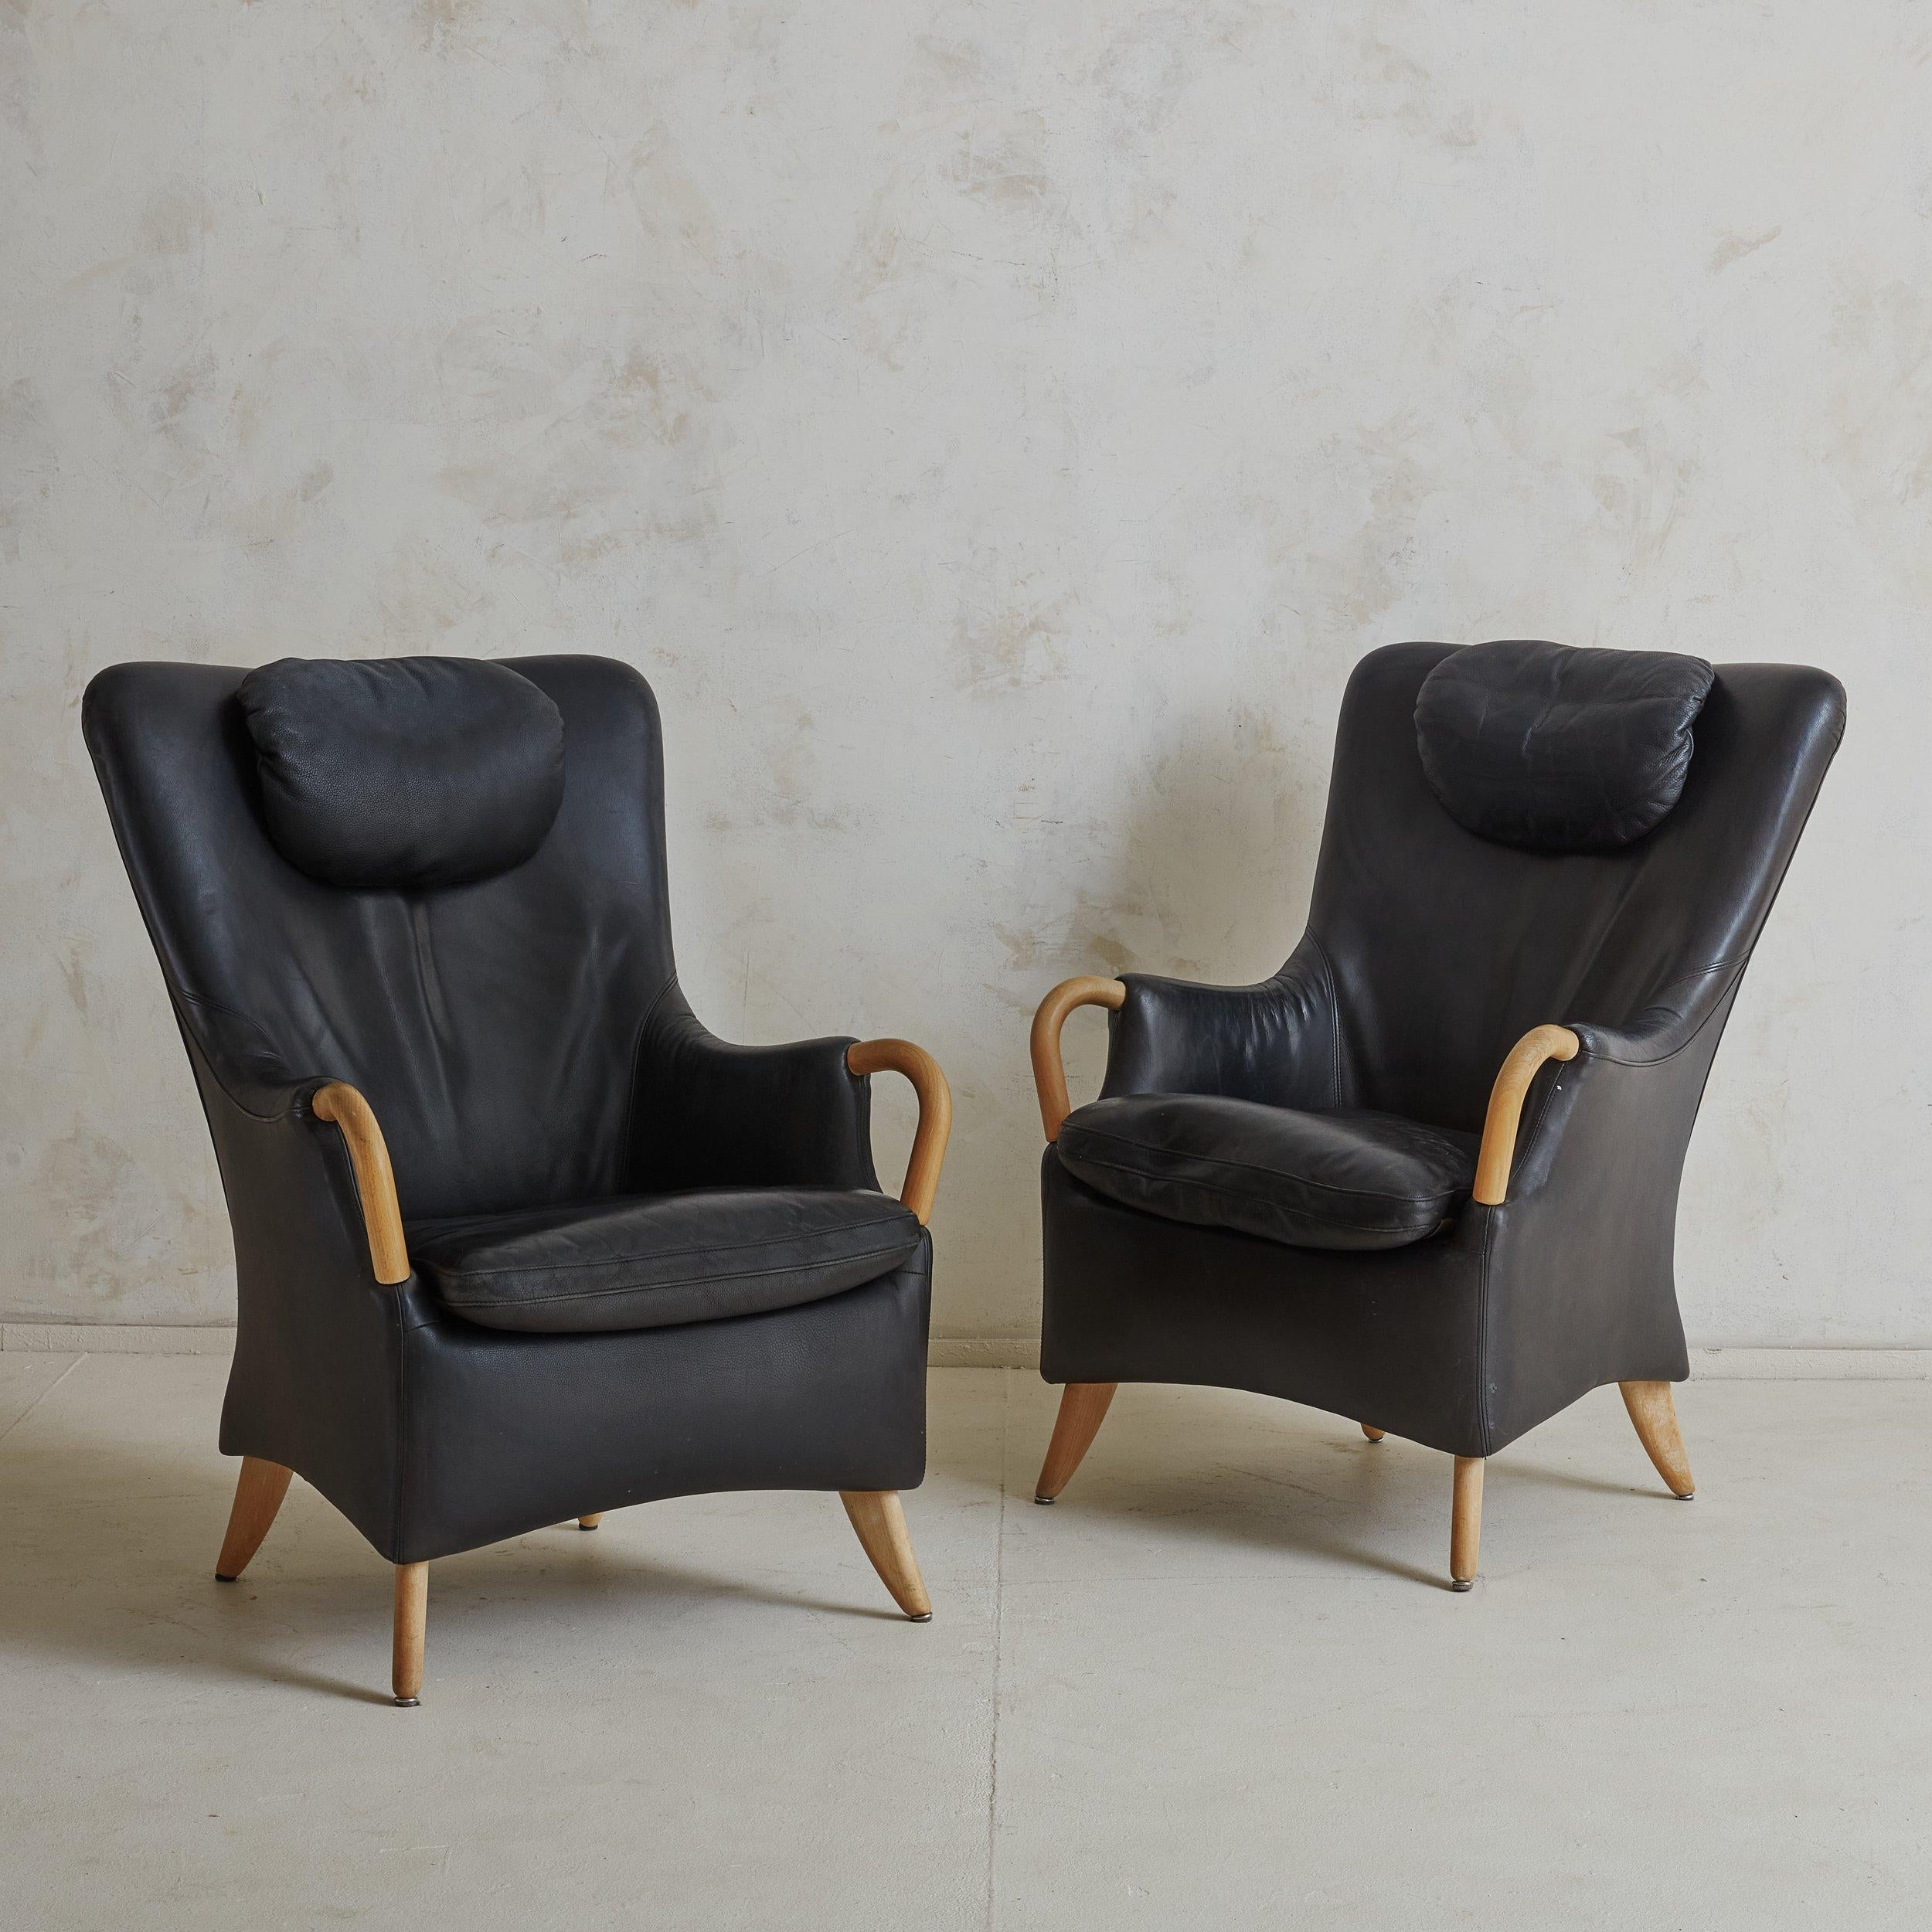 Ein Paar dänische Sessel aus schwarzem Leder mit passendem Fußhocker, entworfen von Søren Nissen & Ebbe Gehl im Jahr 1984. Diese skandinavisch-modernen Sessel haben skulpturale Rückenlehnengestelle und alle drei Stücke bestehen aus blondem